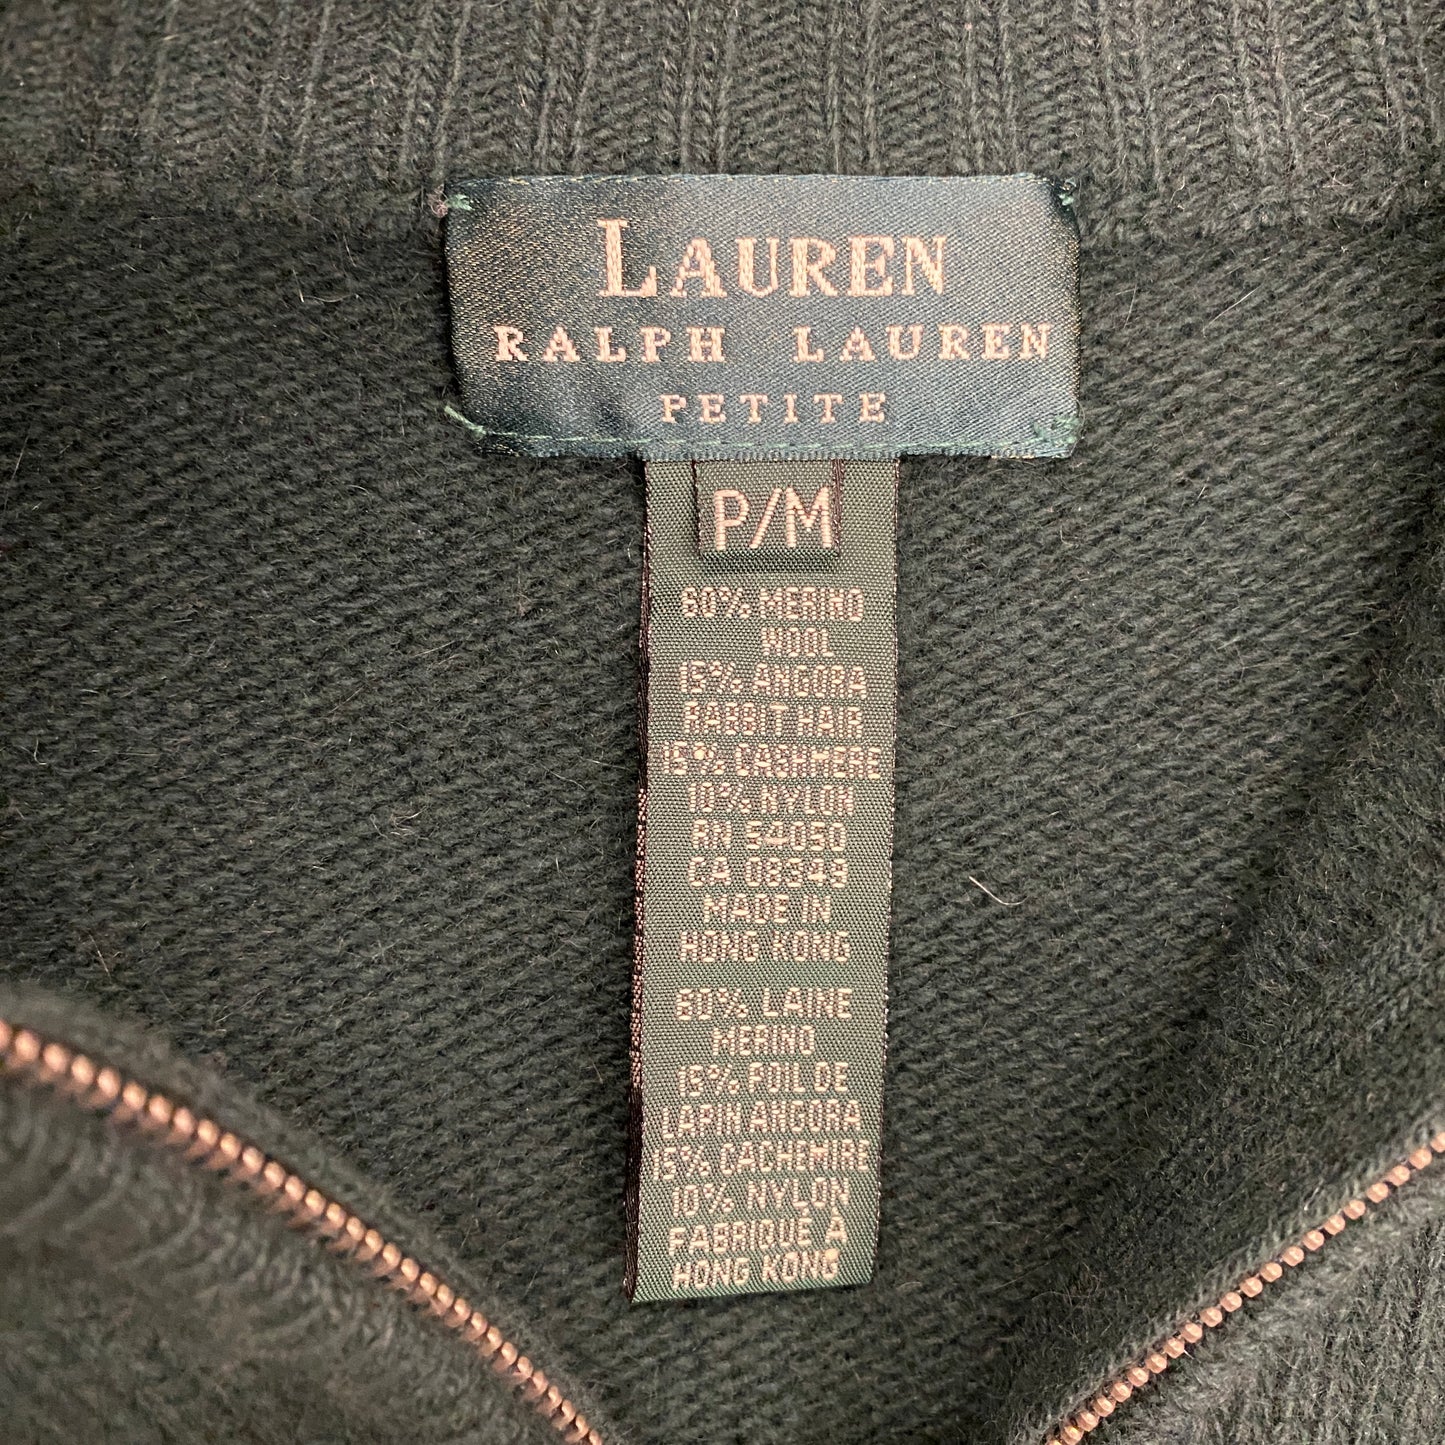 Lauren Ralph Lauren Forest Green Angora Wool Quarter Zip Sweater - Size Small